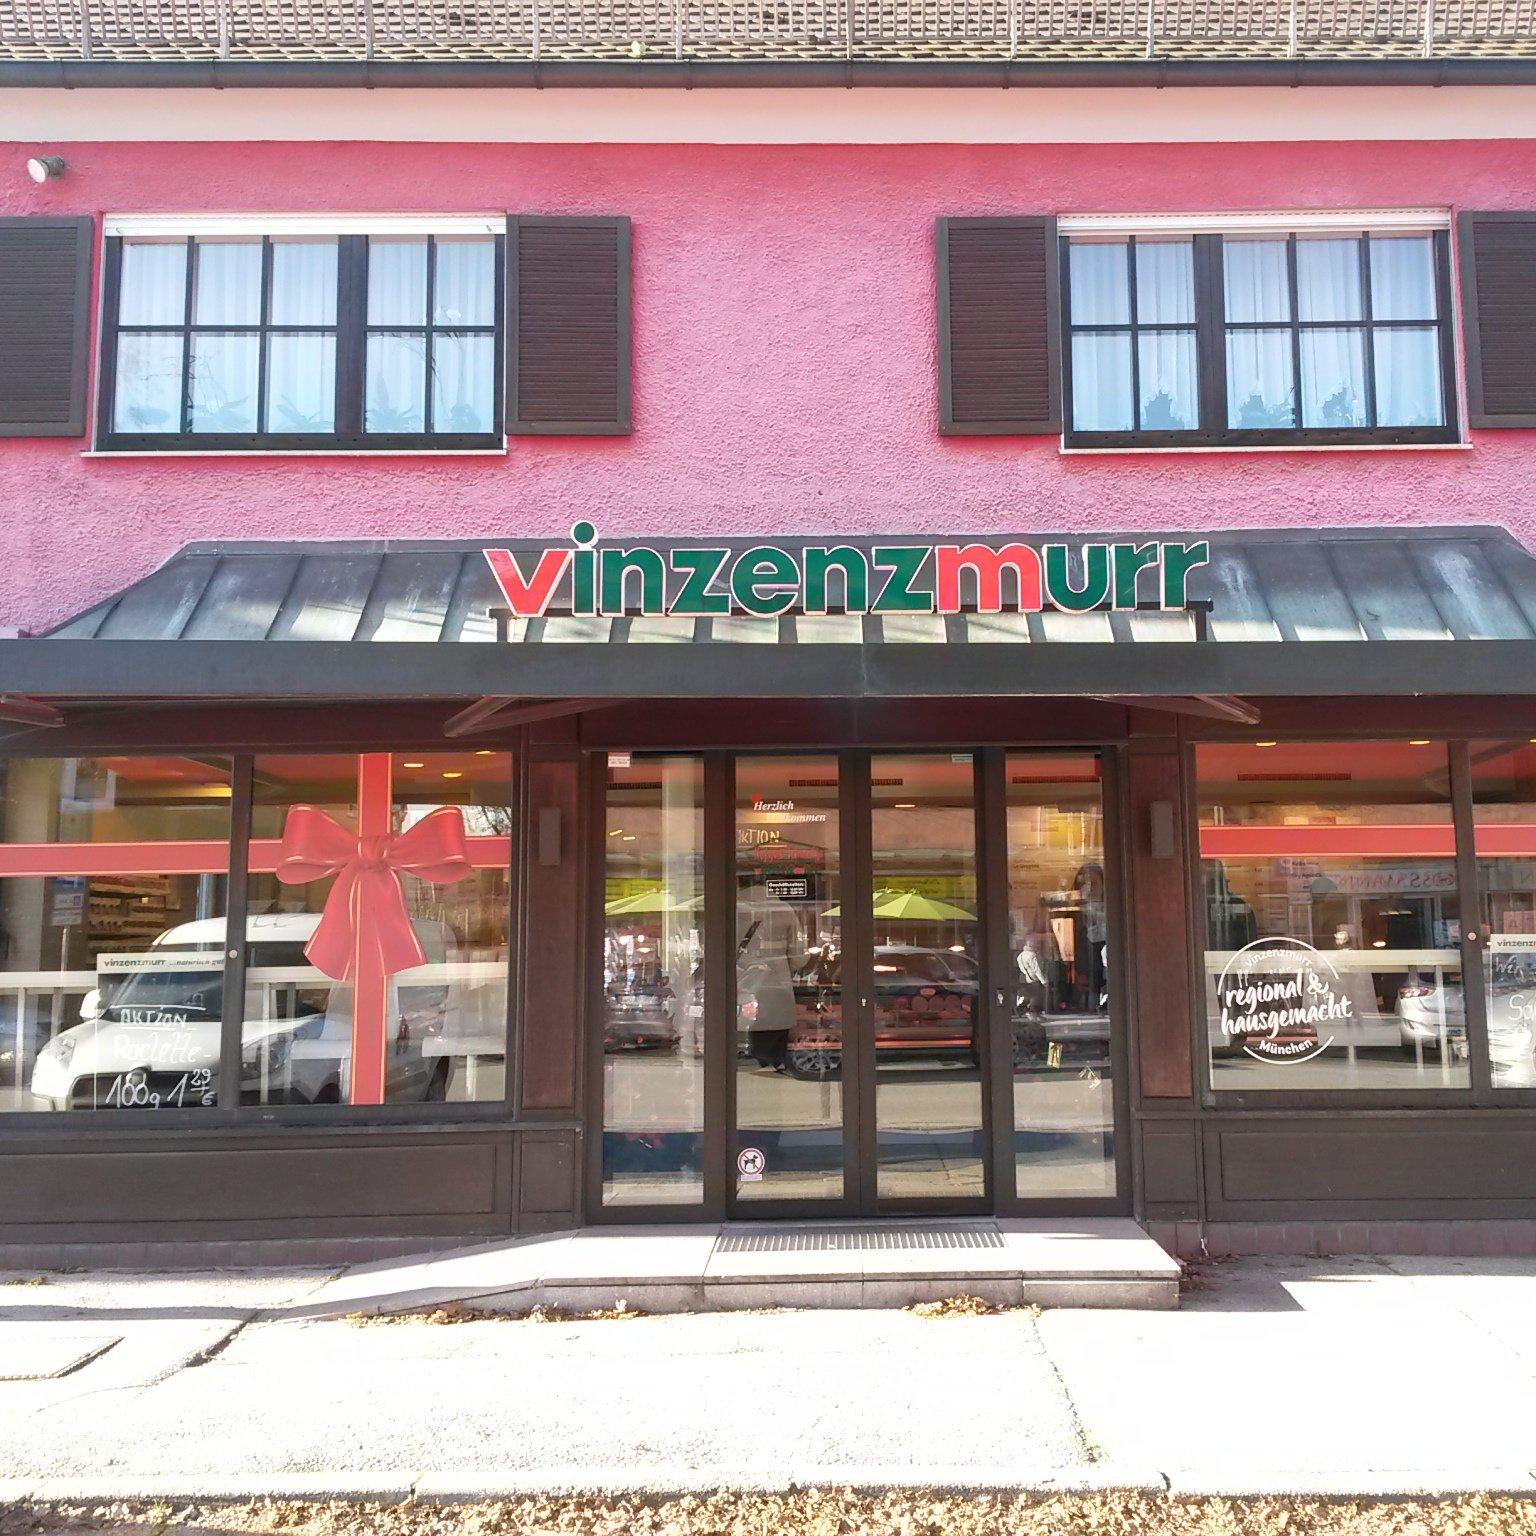 Restaurant "Vinzenzmurr Metzgerei -" in Haar